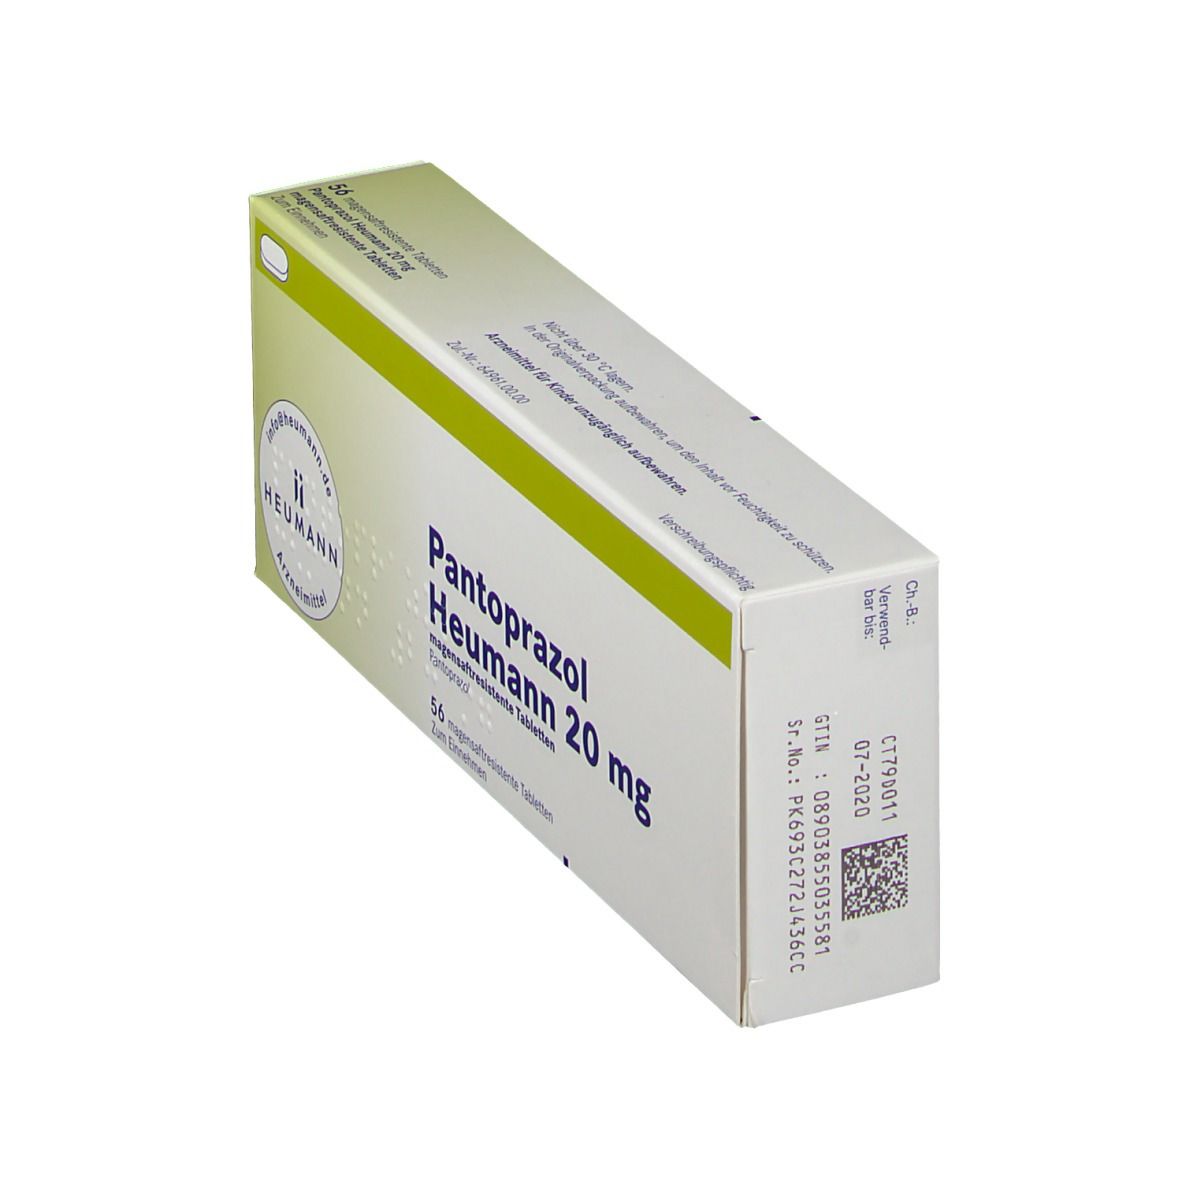 Pantoprazol Heumann 20 mg